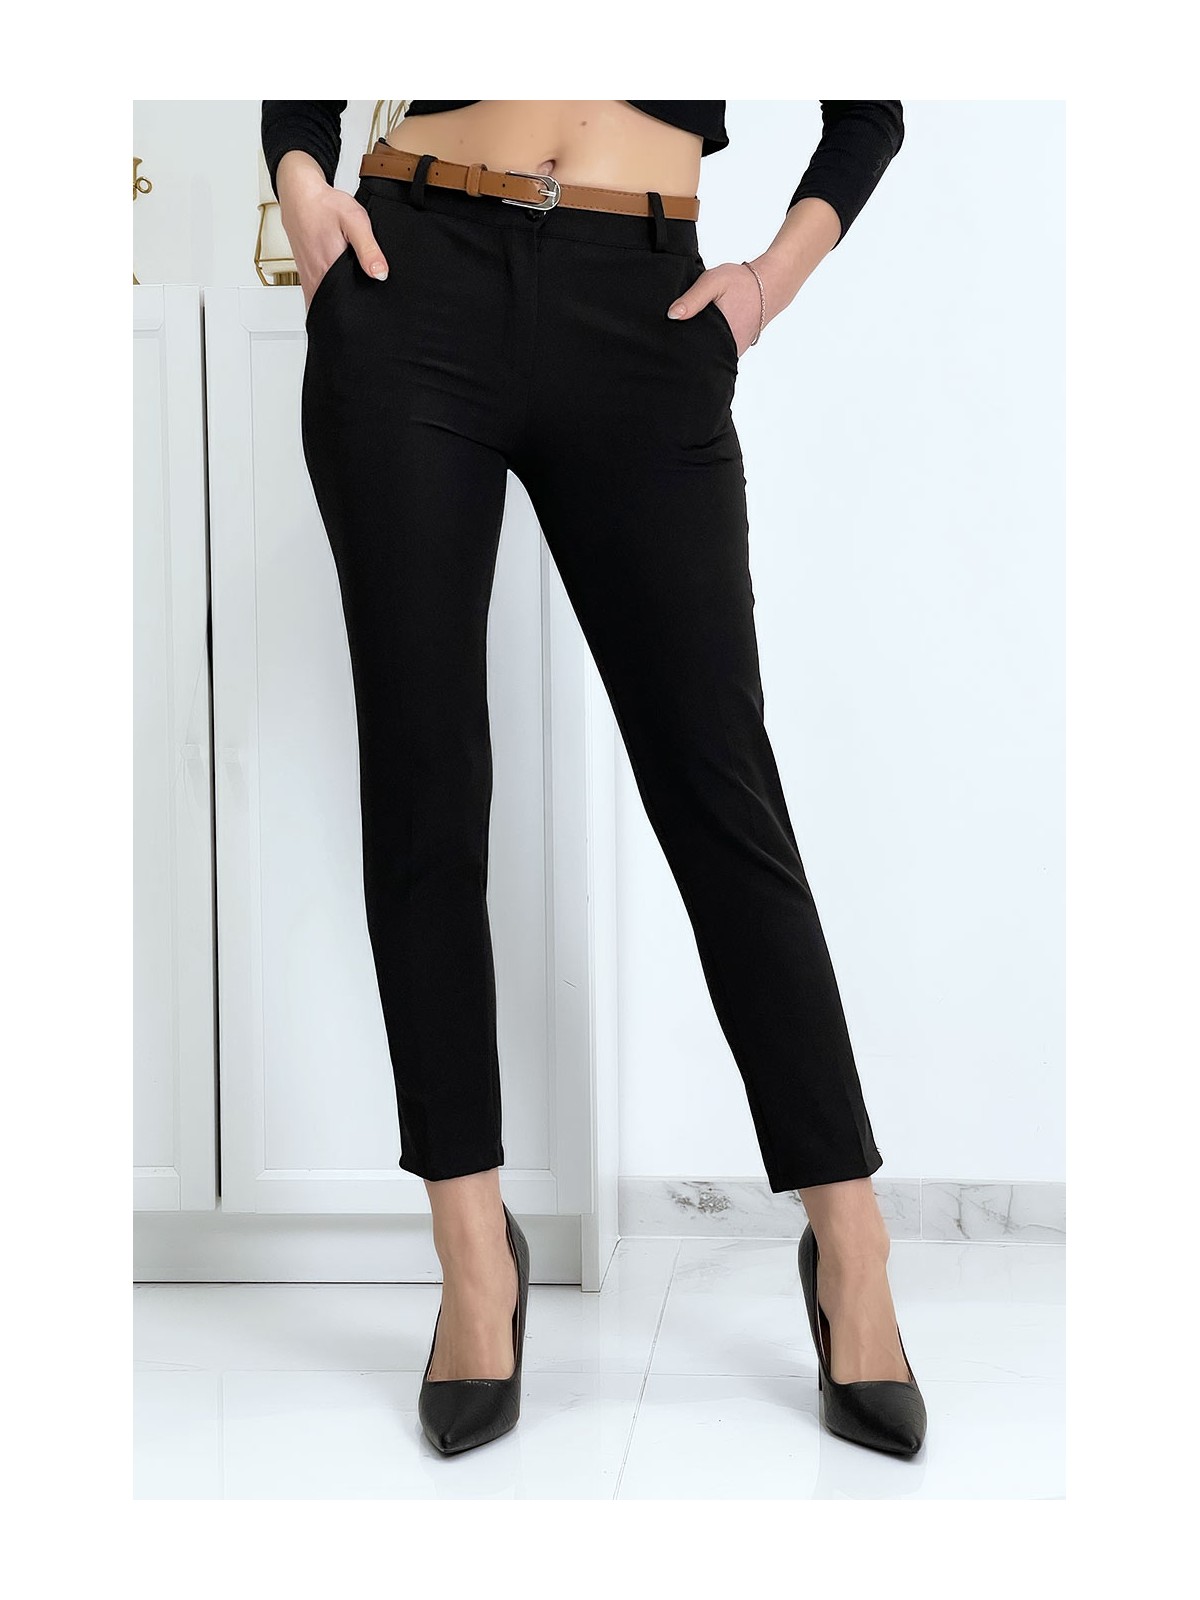 Pantalon working girl noir avec poches et ceinture - 2